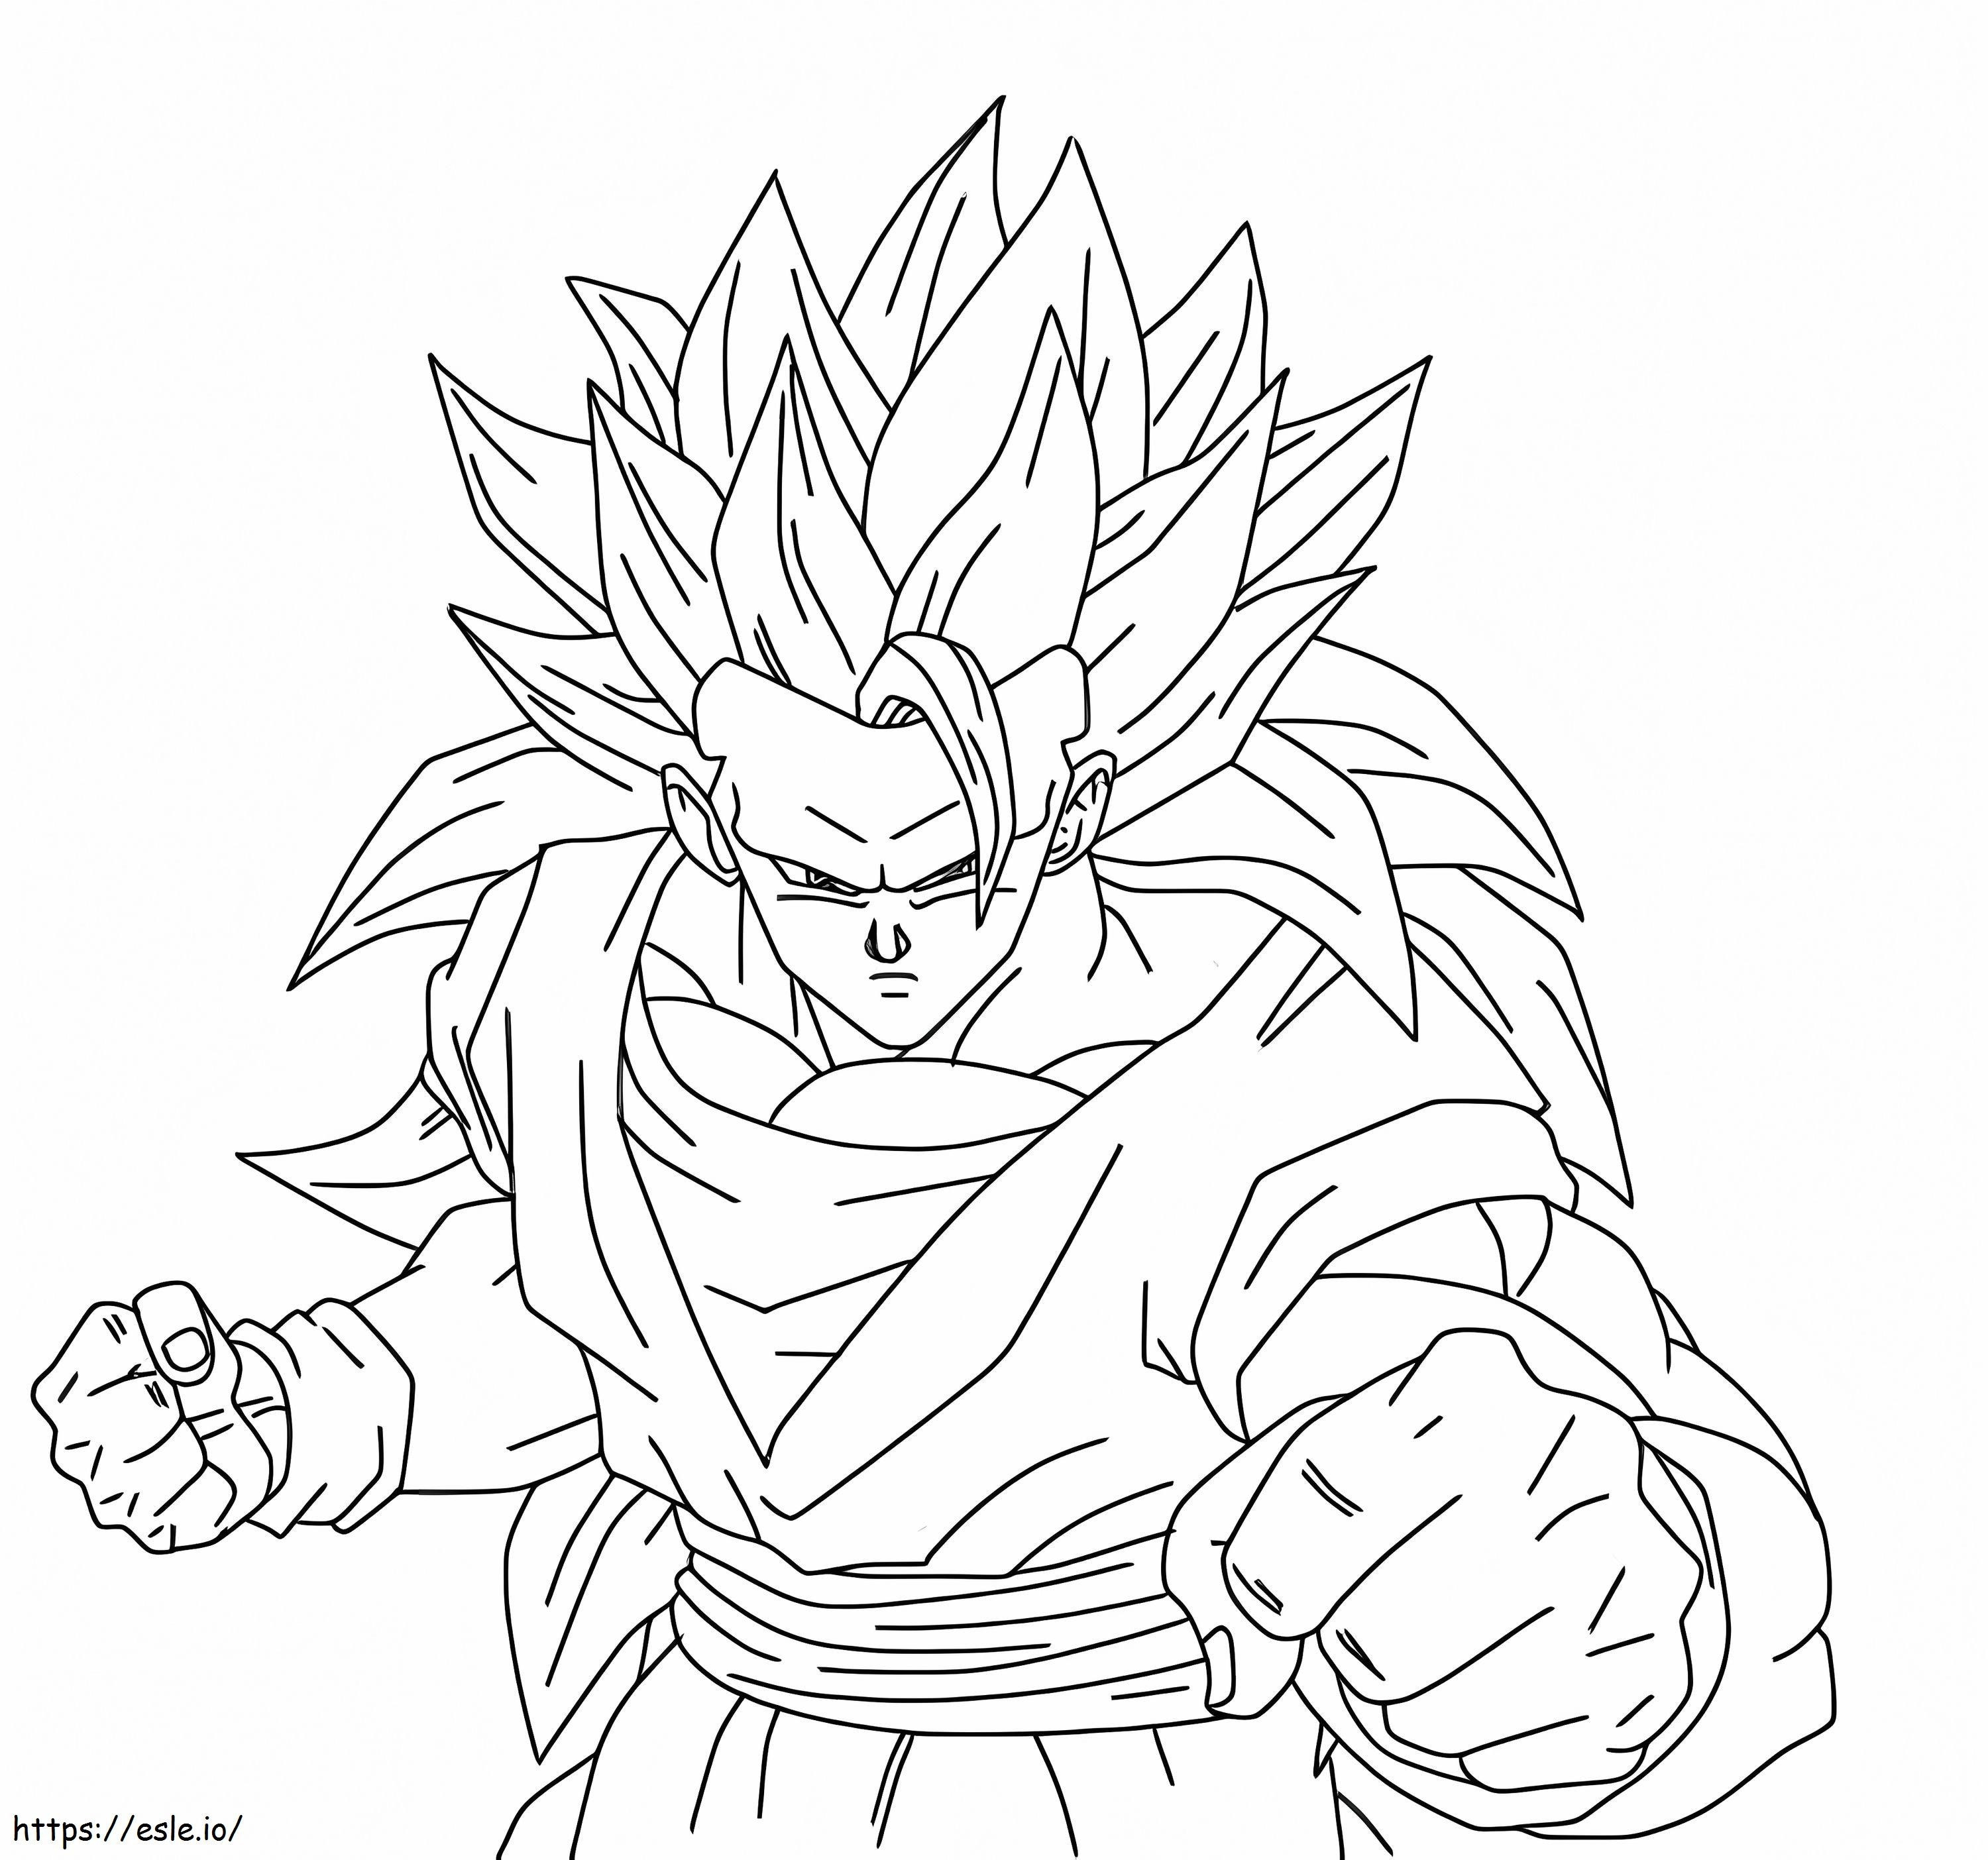 Coloriage Son Goku se bat à imprimer dessin